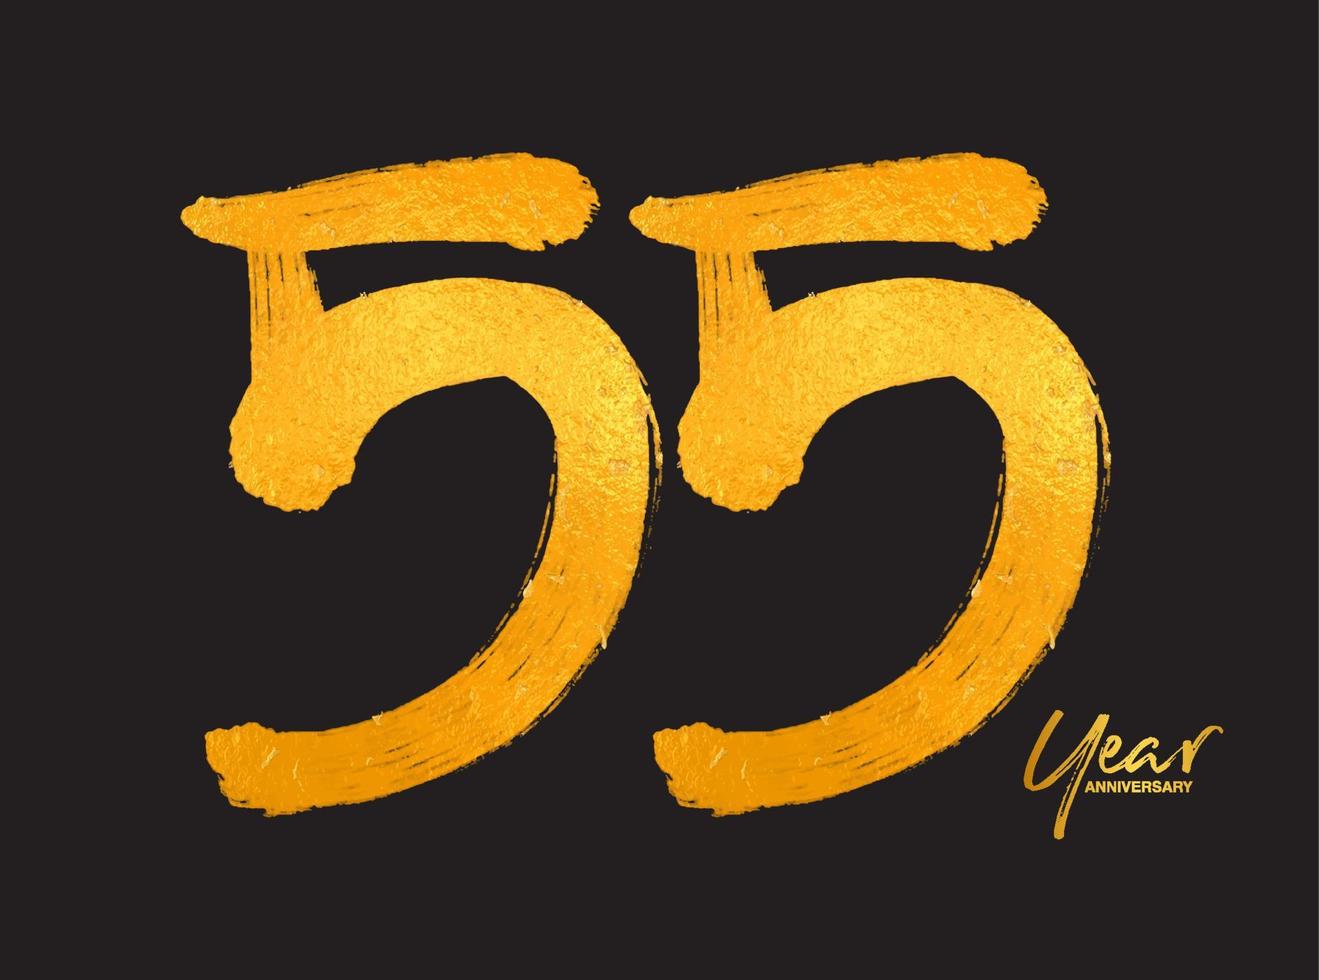 oro 55 anni anniversario celebrazione modello vettoriale, 55 anni logo design, 55° compleanno, lettere dorate numeri pennello disegno schizzo disegnato a mano, numero logo design illustrazione vettoriale